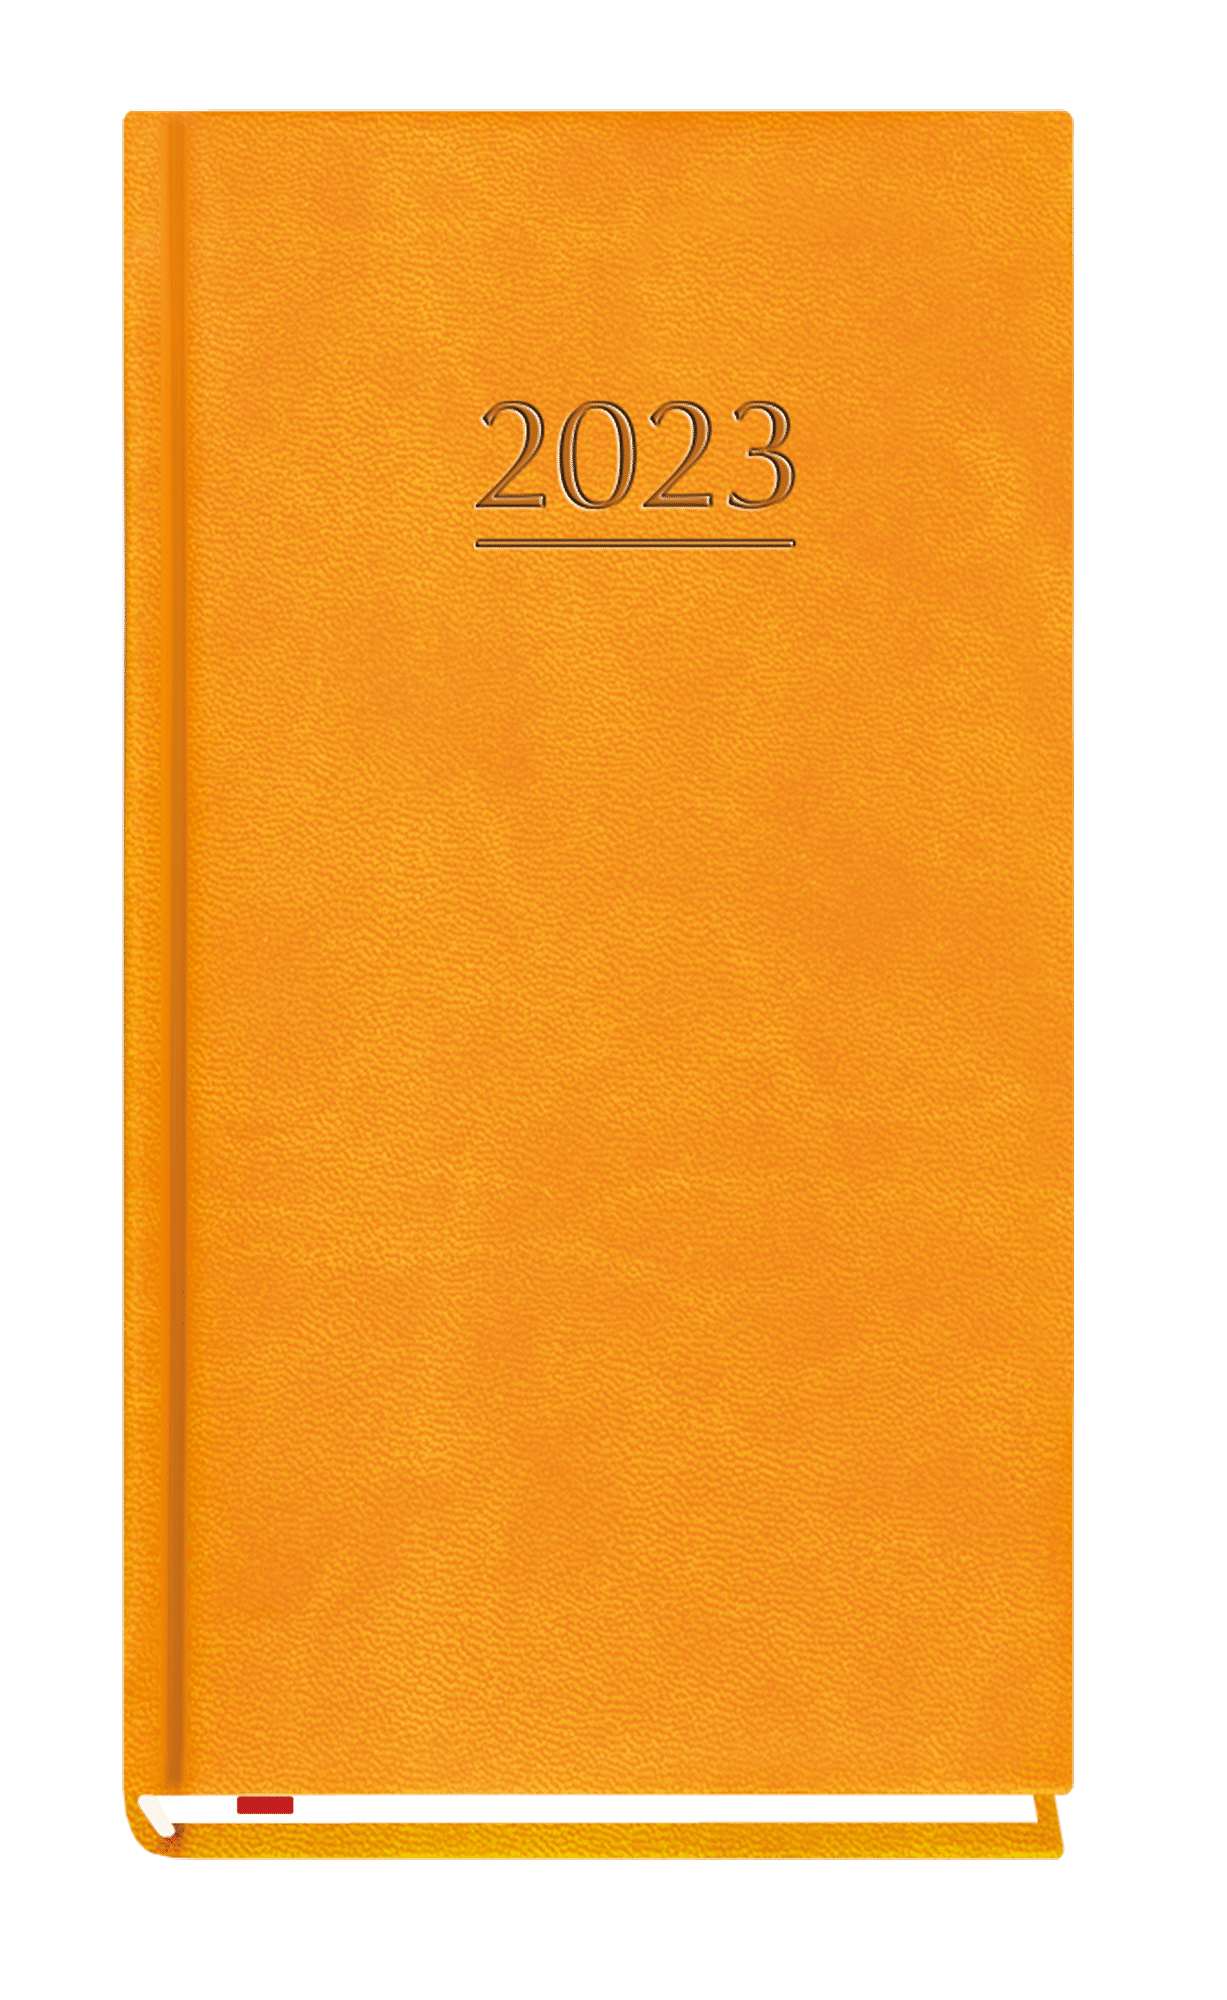 Terminarz 2023 Kieszonkowy pomarańczowy